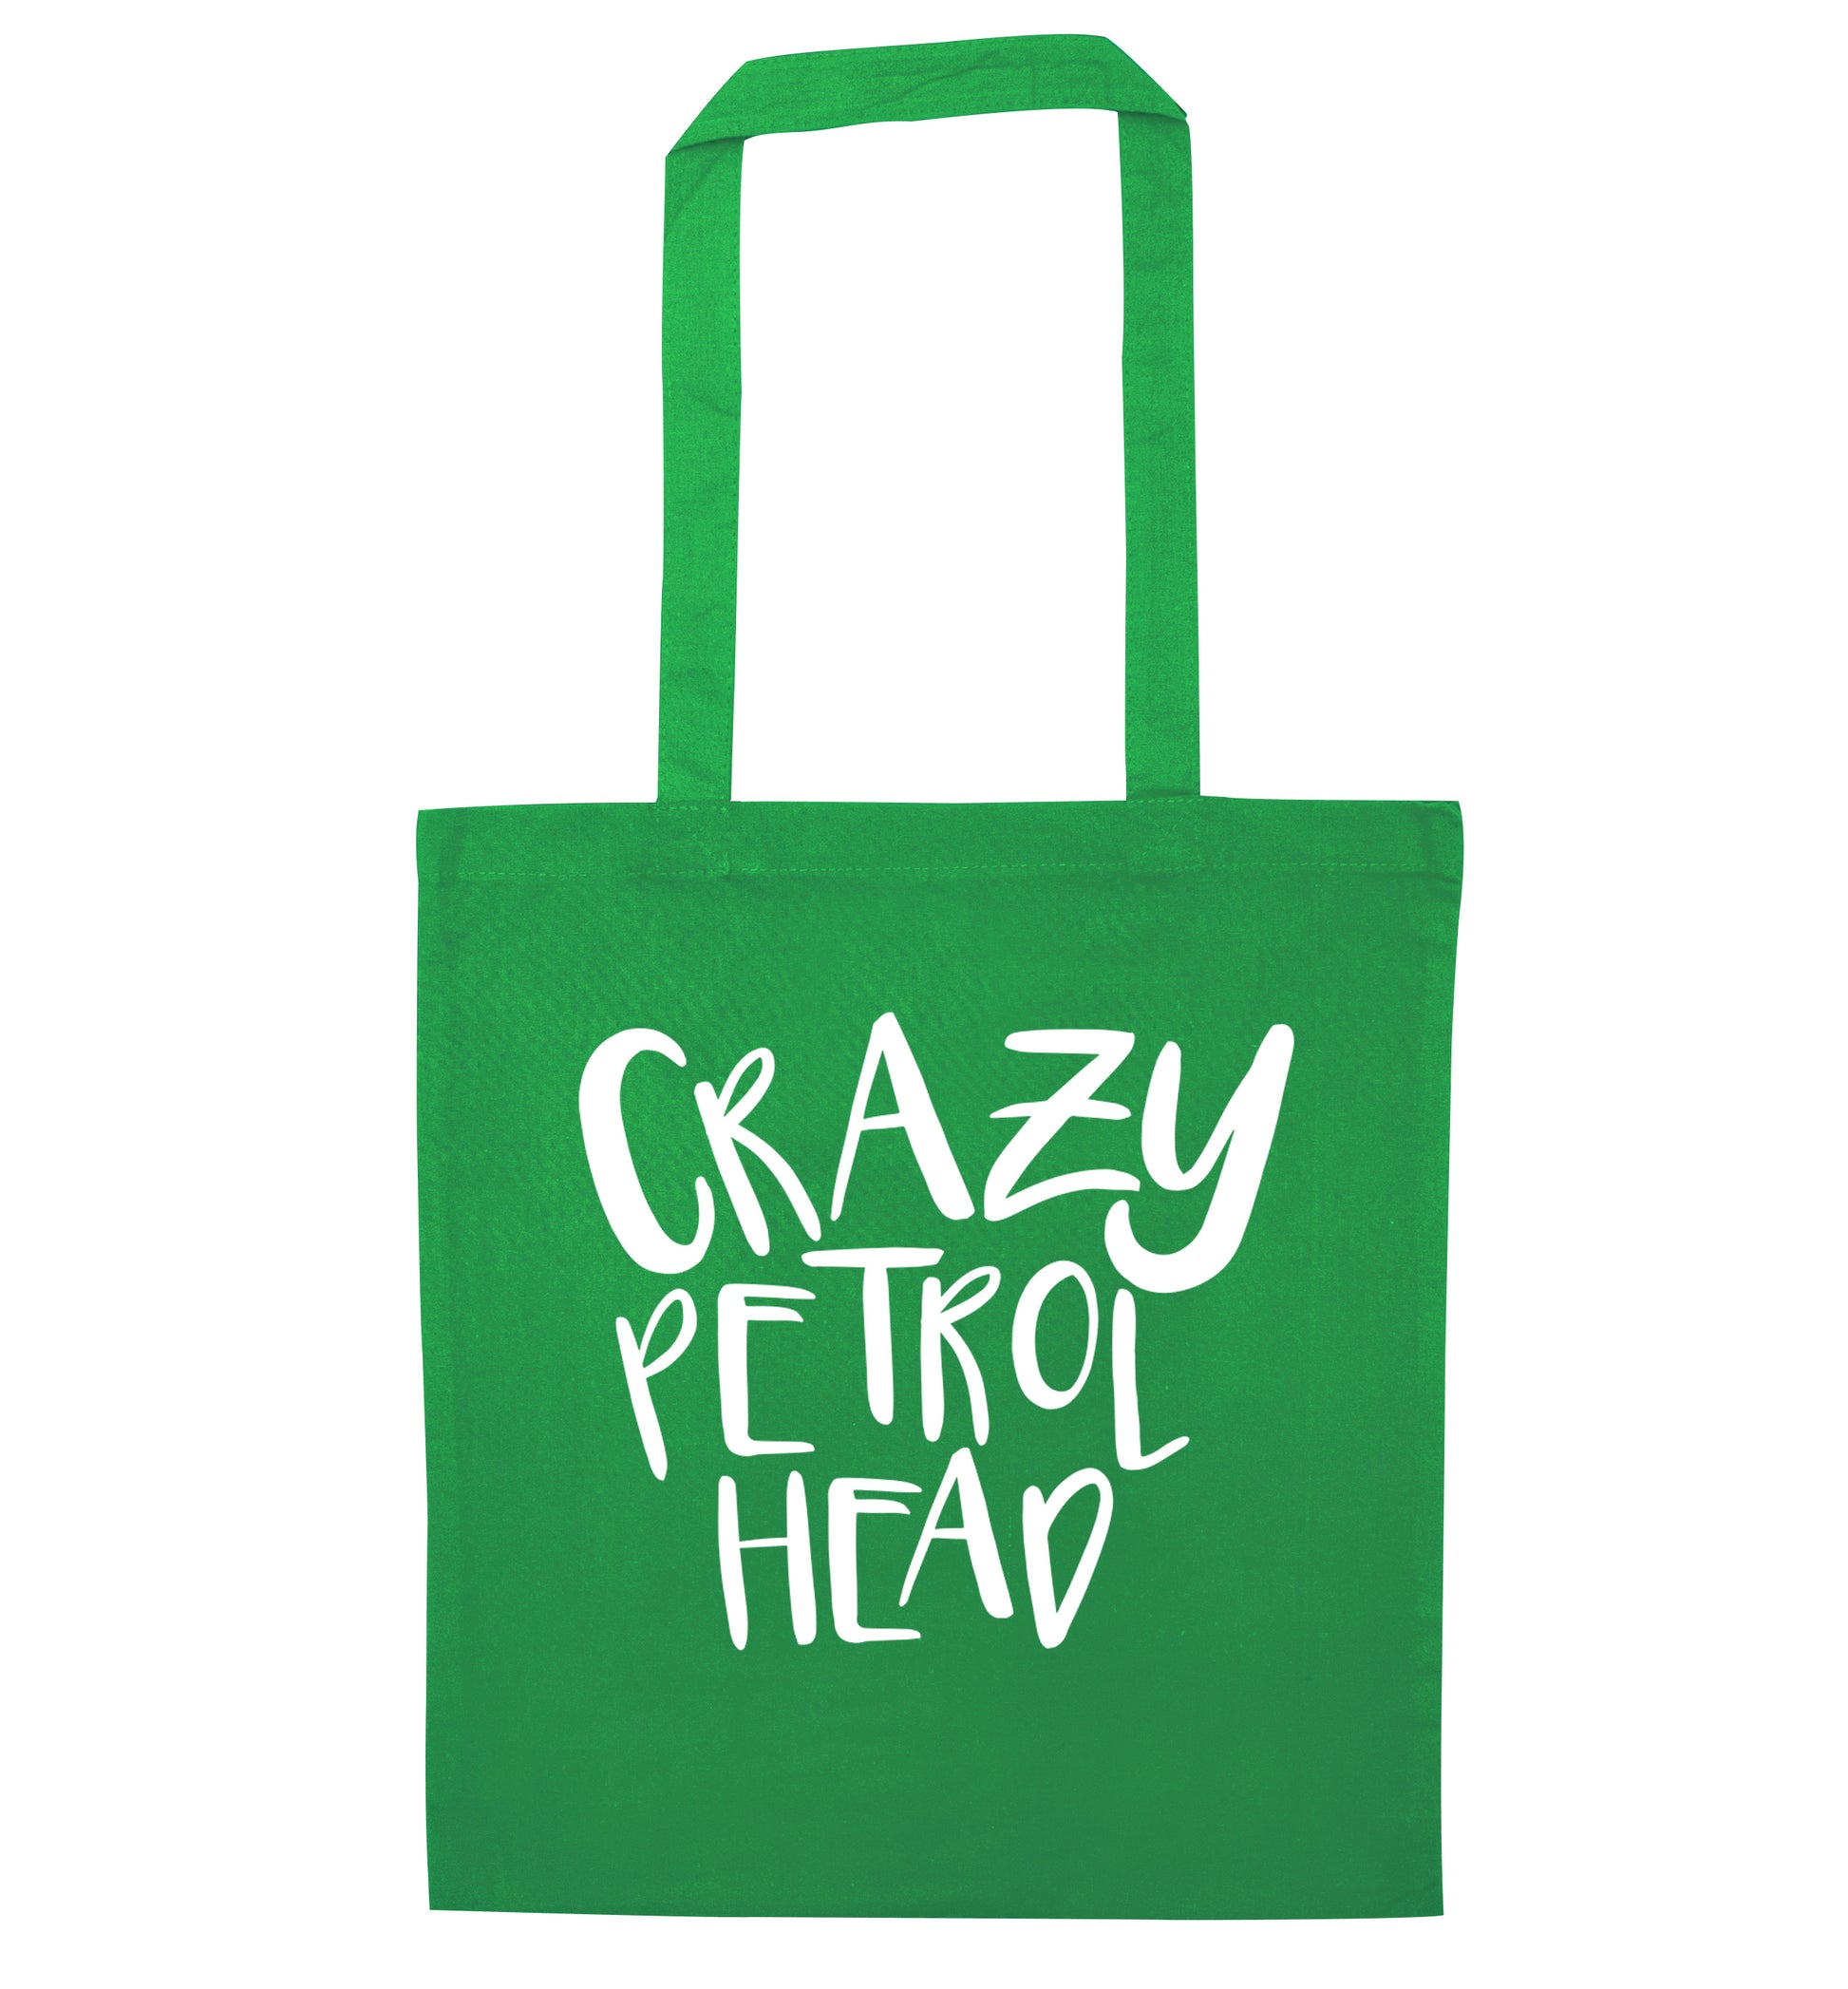 Crazy petrol head green tote bag